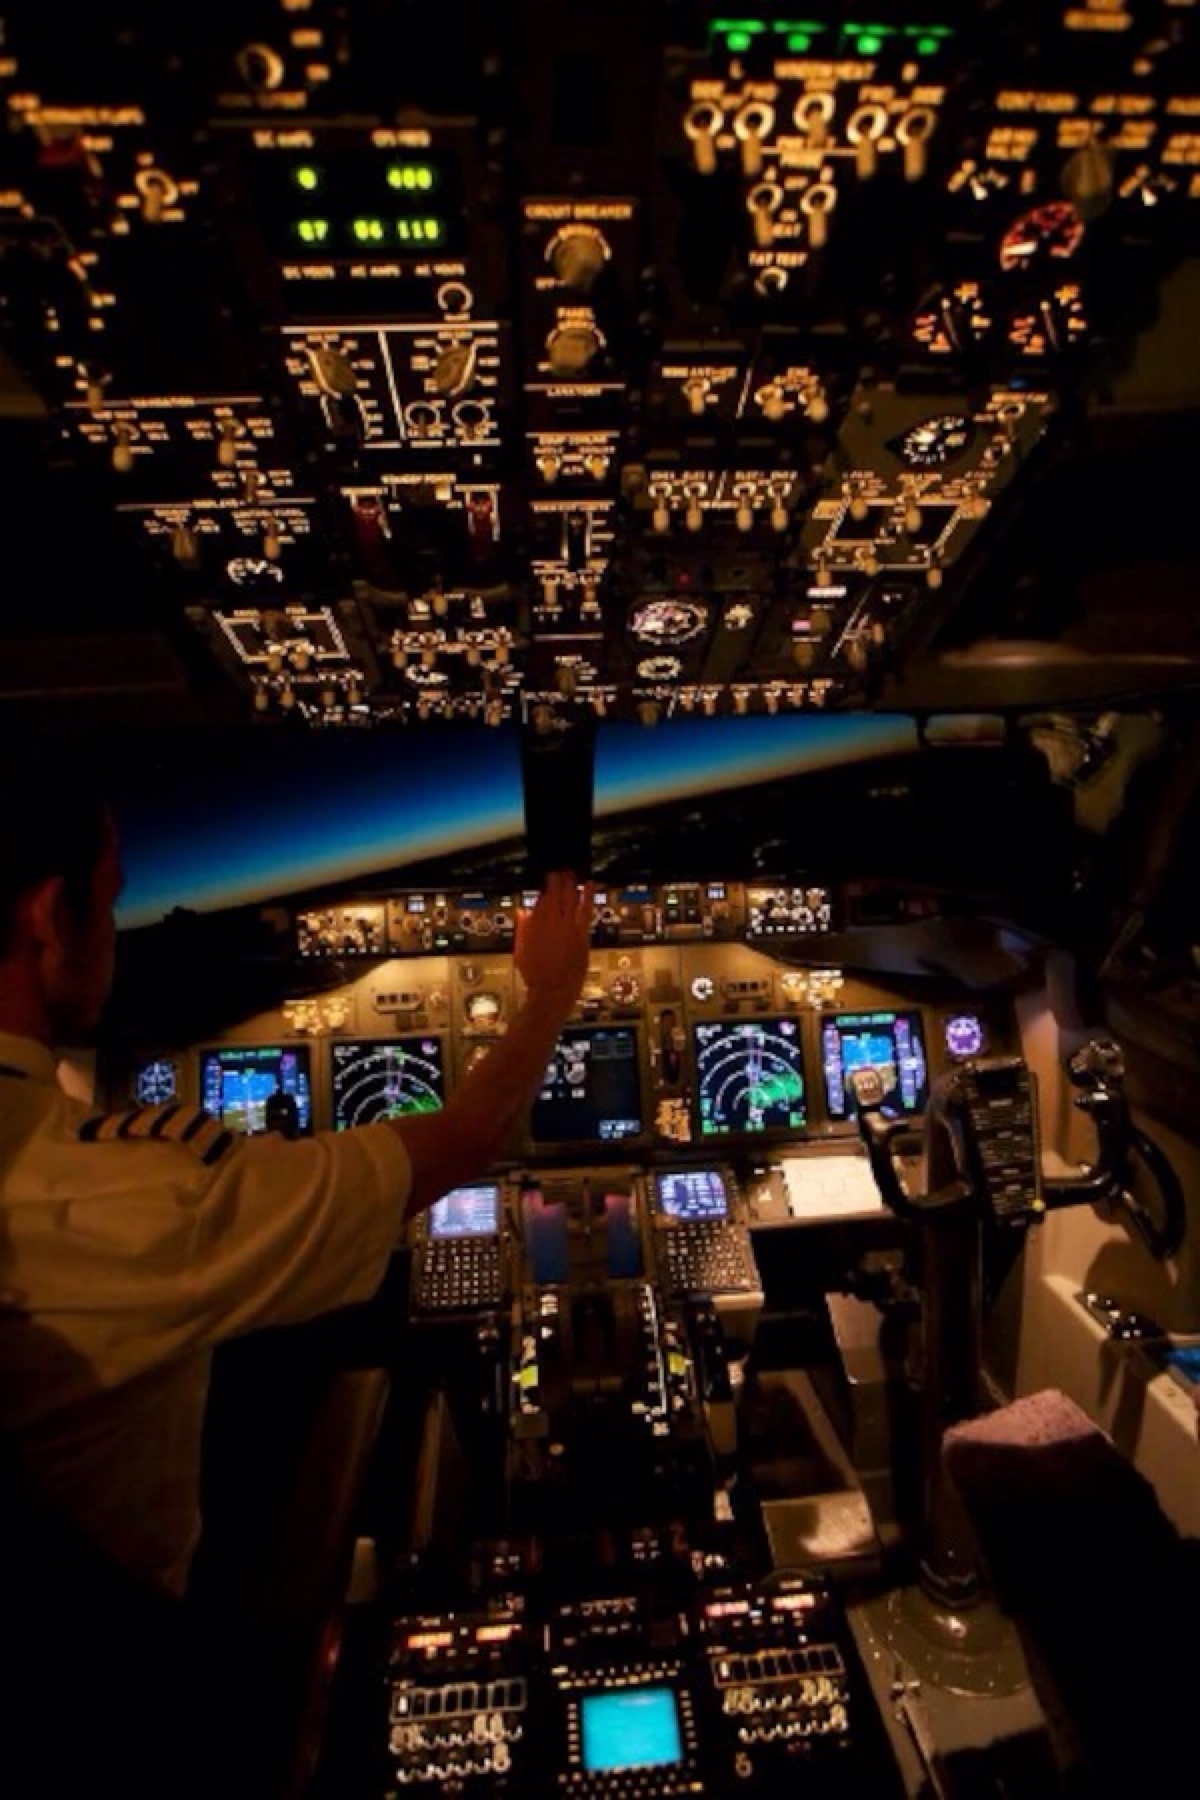 747-400客机驾驶室图片